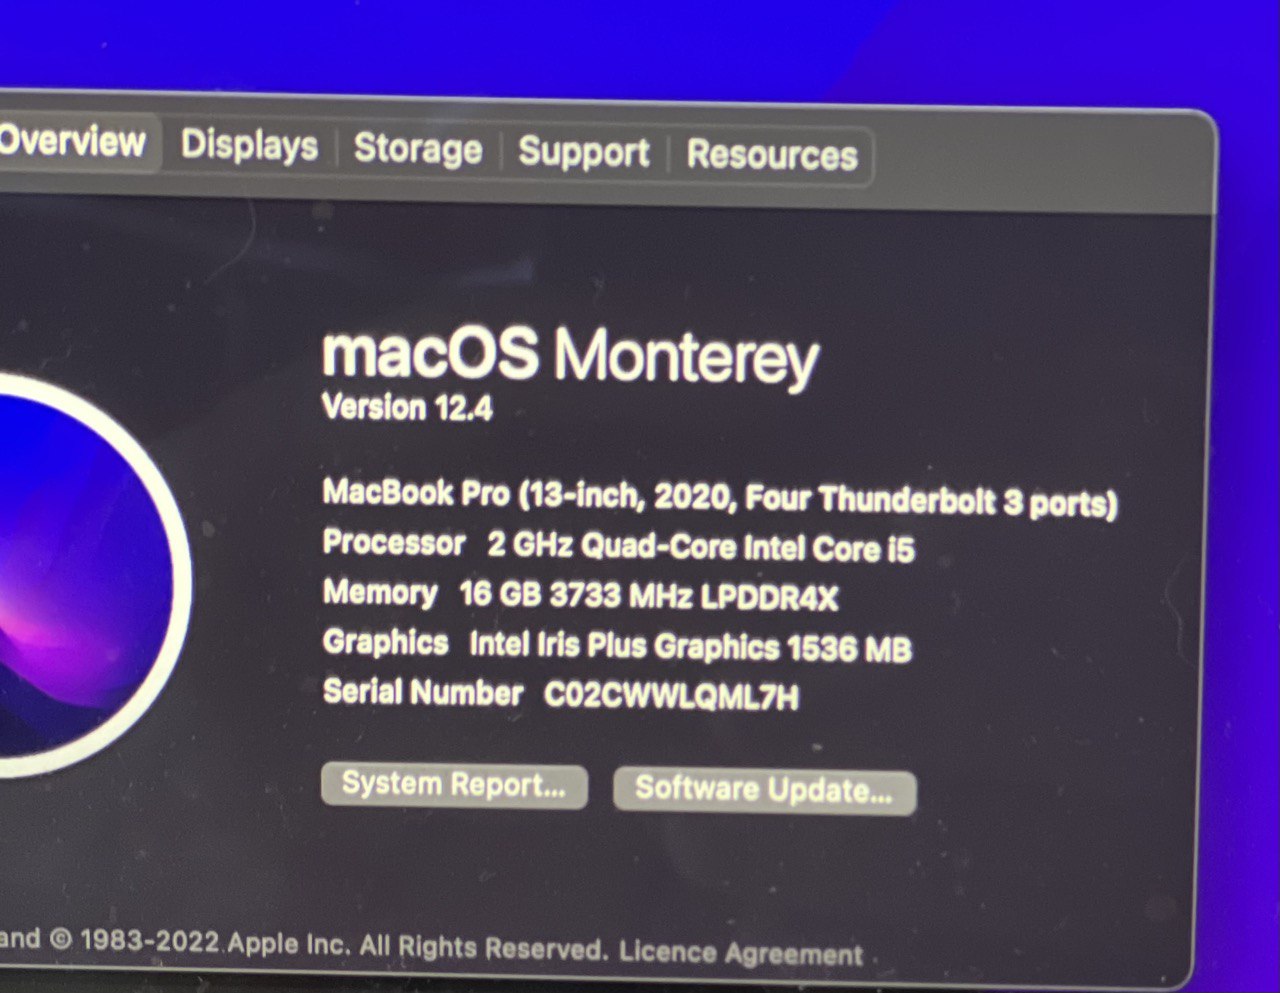 MacBook Pro 13″ | 2020 | Intel Core i5 Ricondizionato (Refurbished)